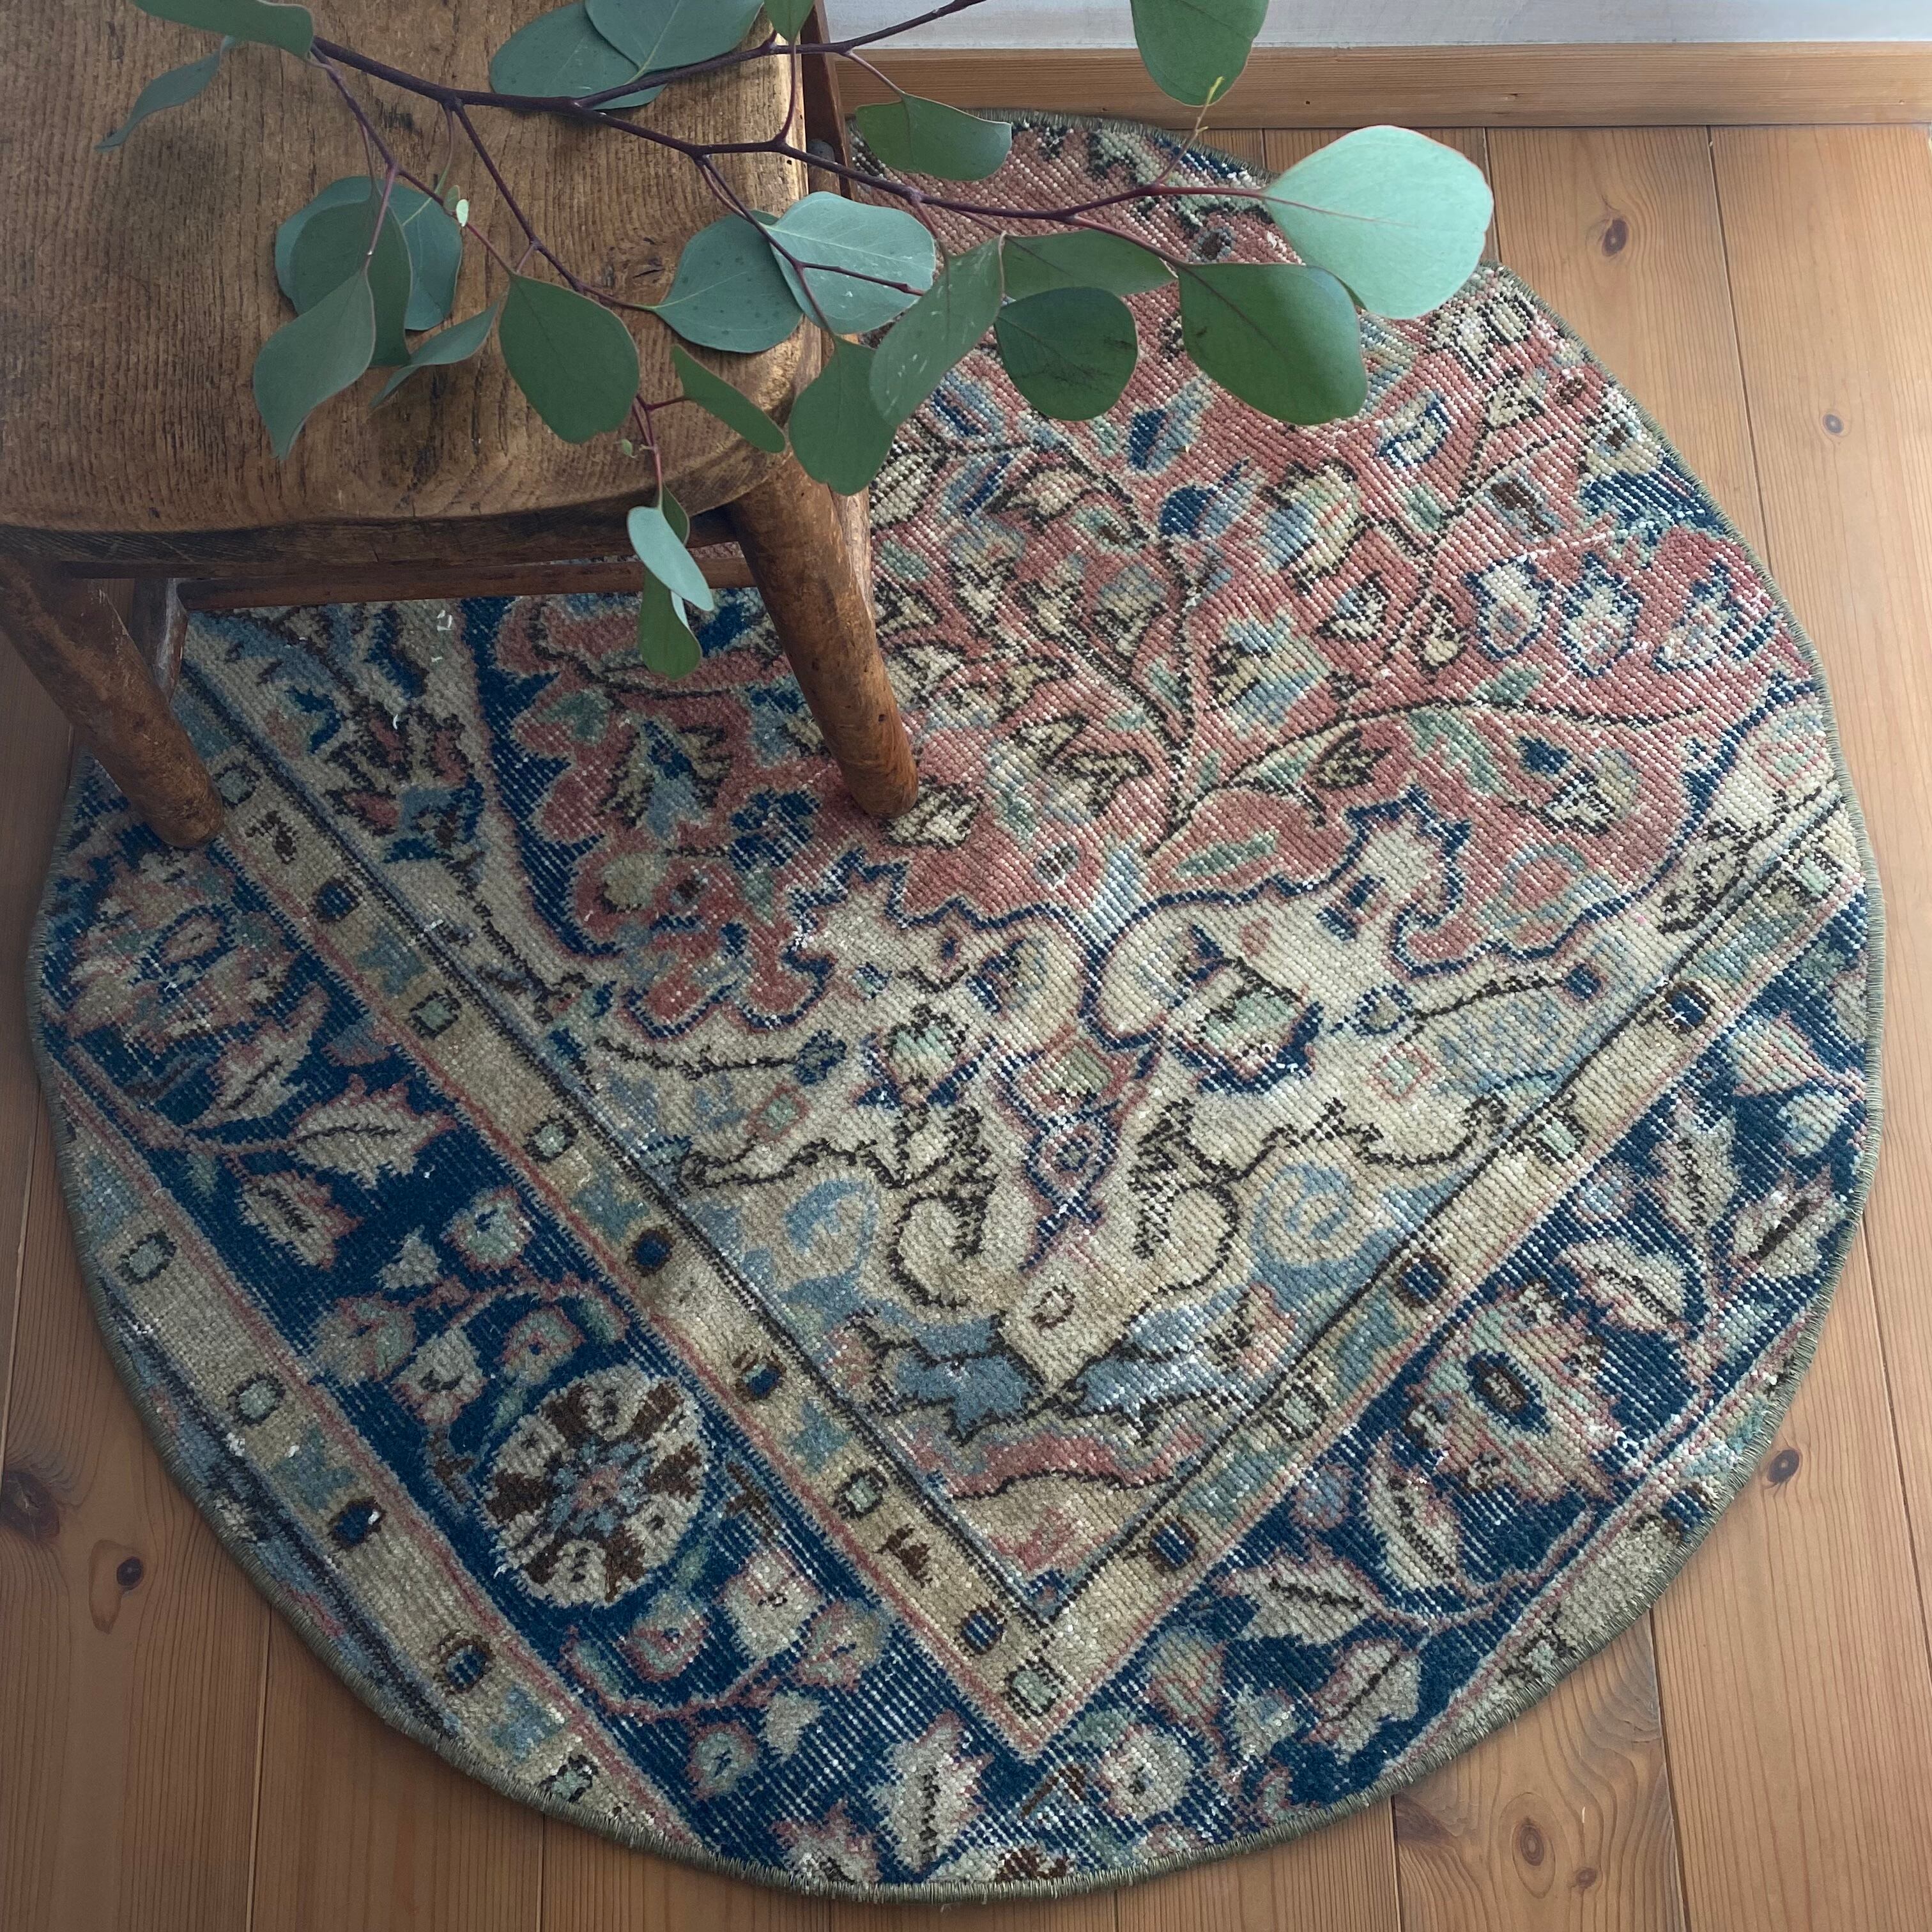 vintage rug,110